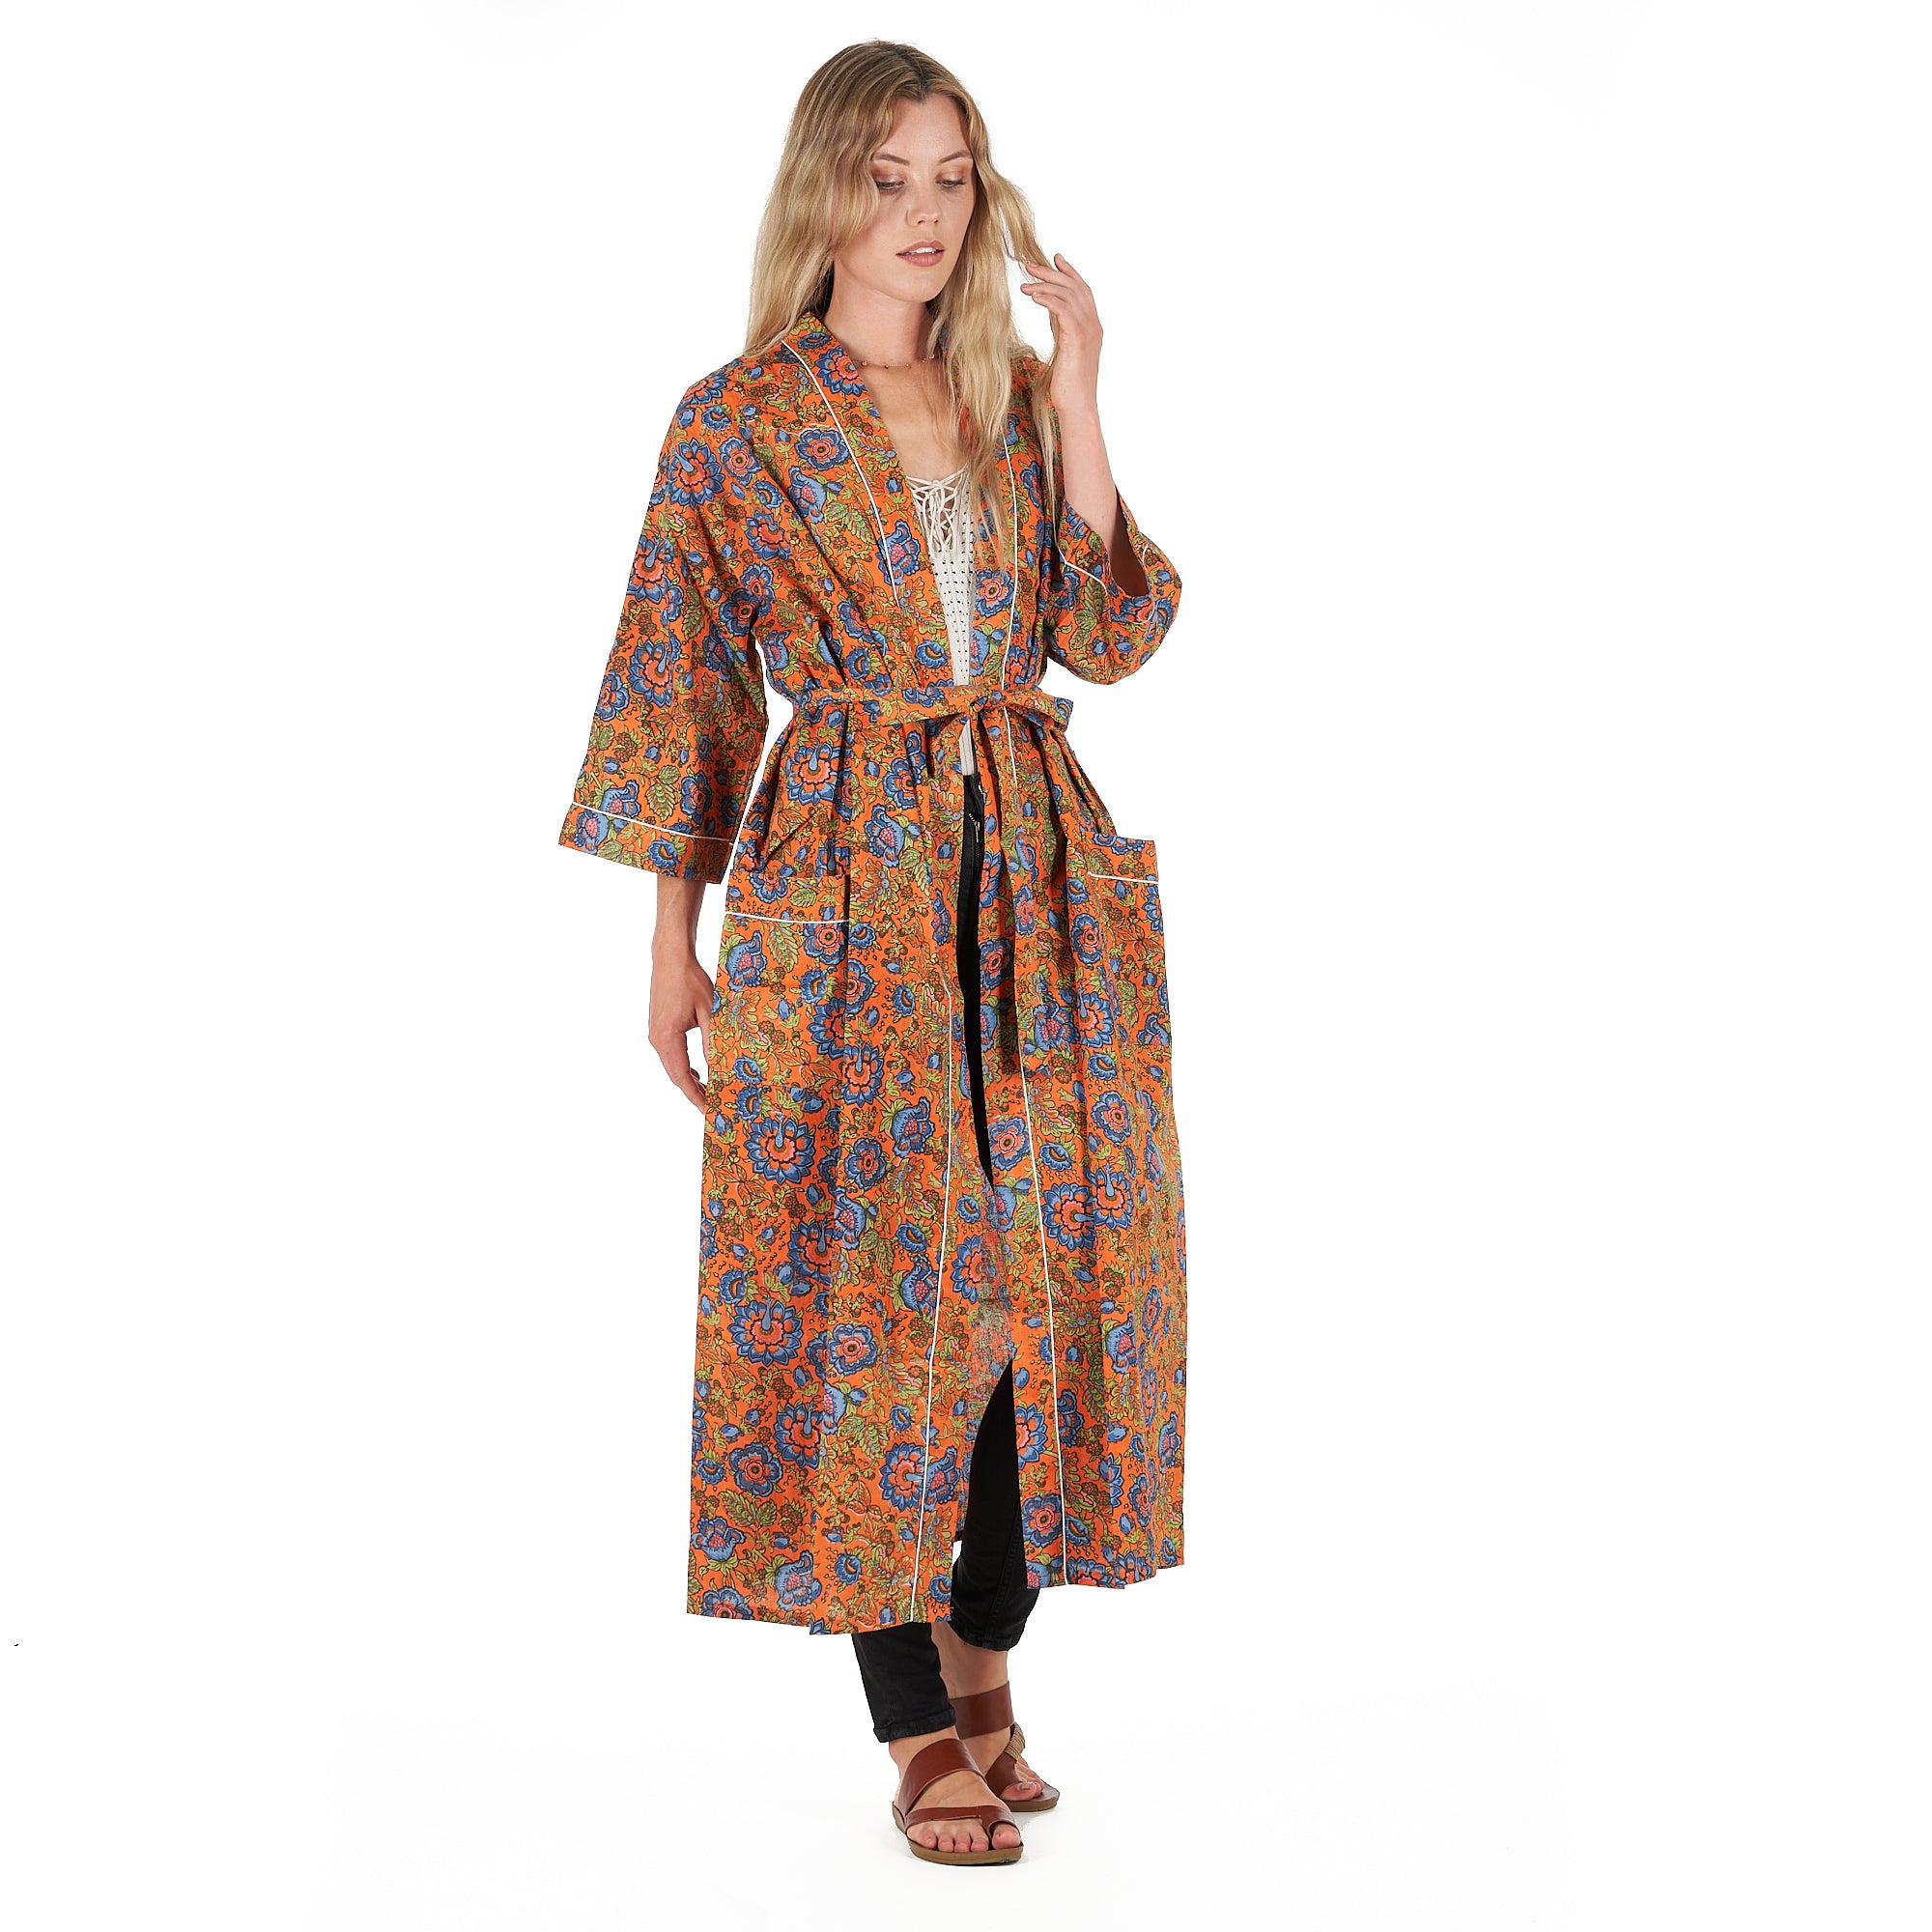 'Lounge In Style' 100% Cotton Kimono Robe